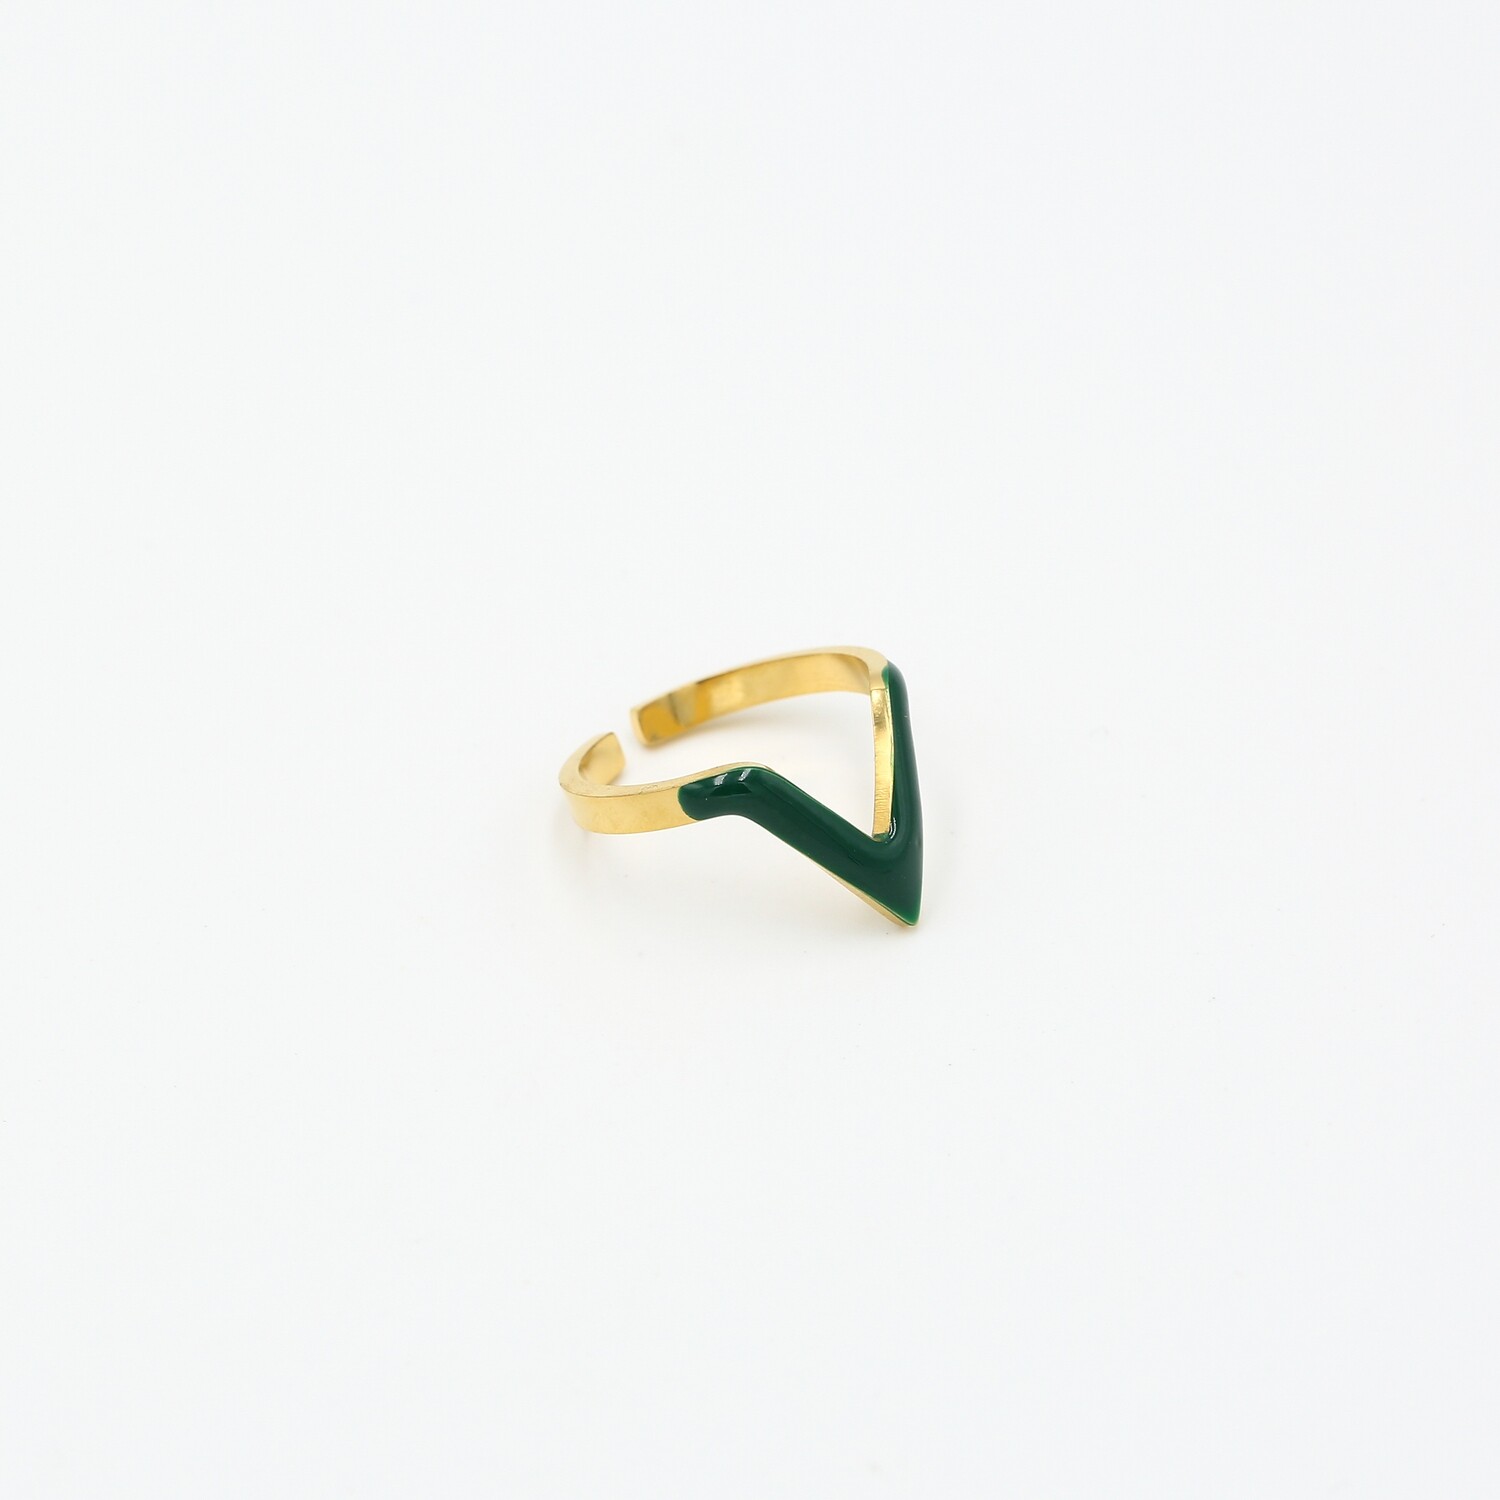 Green V shape ring